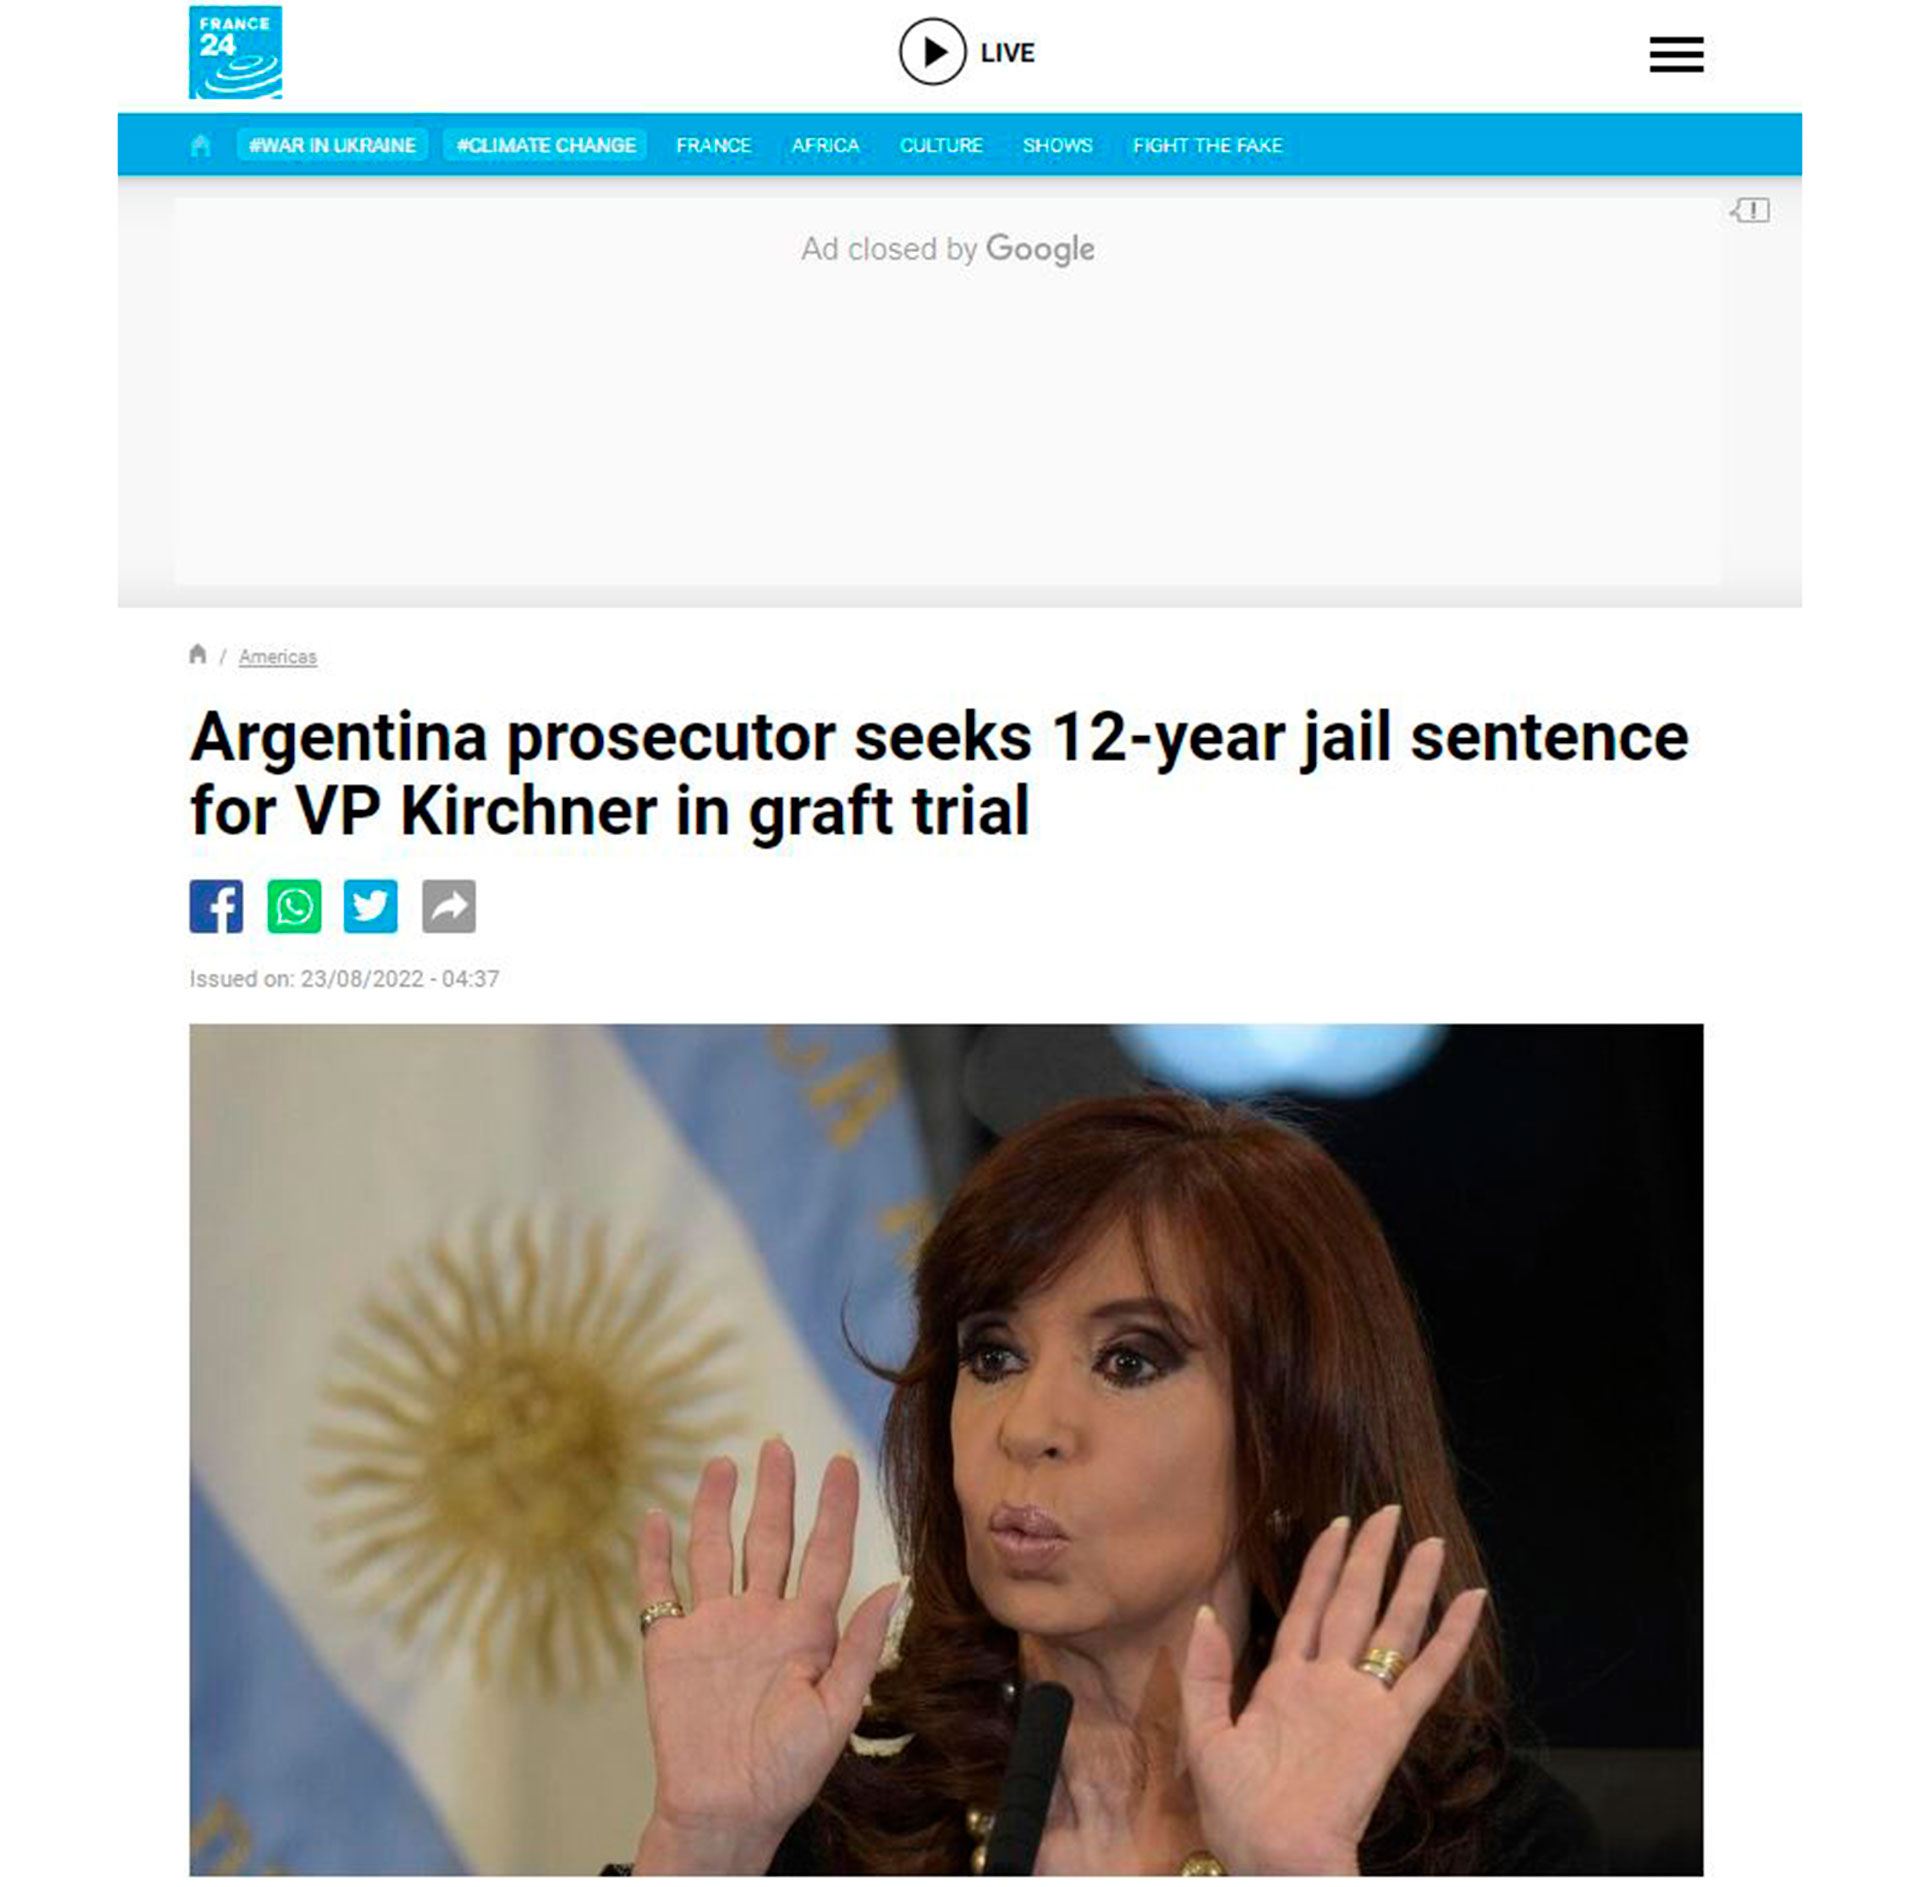 "Argentine. Le procureur veut que le vice-président Fernández soit emprisonné pendant 12 ans pour corruption présumée".  France24 (France). 